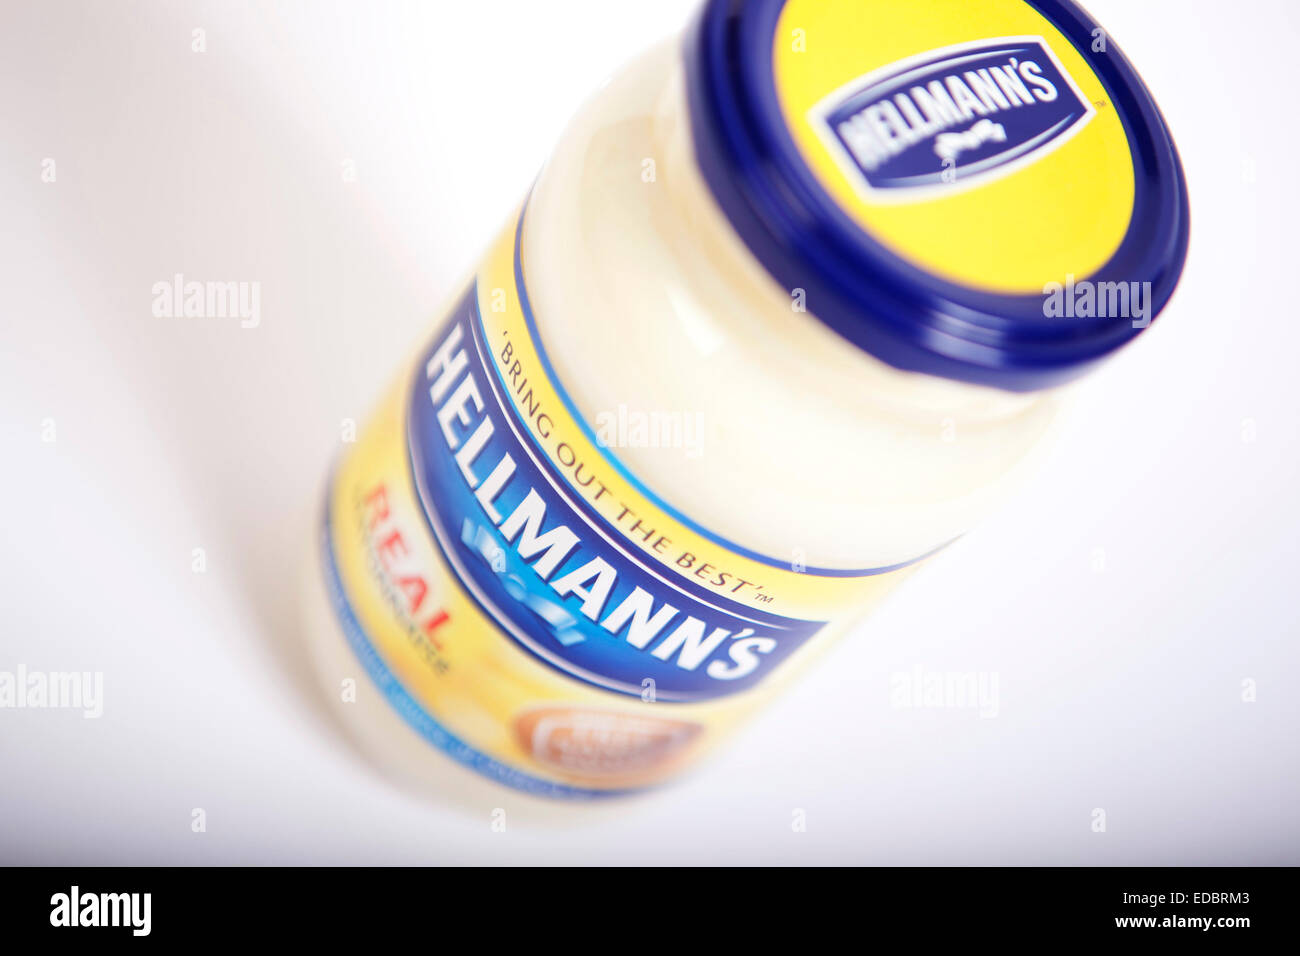 Image Illeutrative de Hellman's la mayonnaise. Banque D'Images